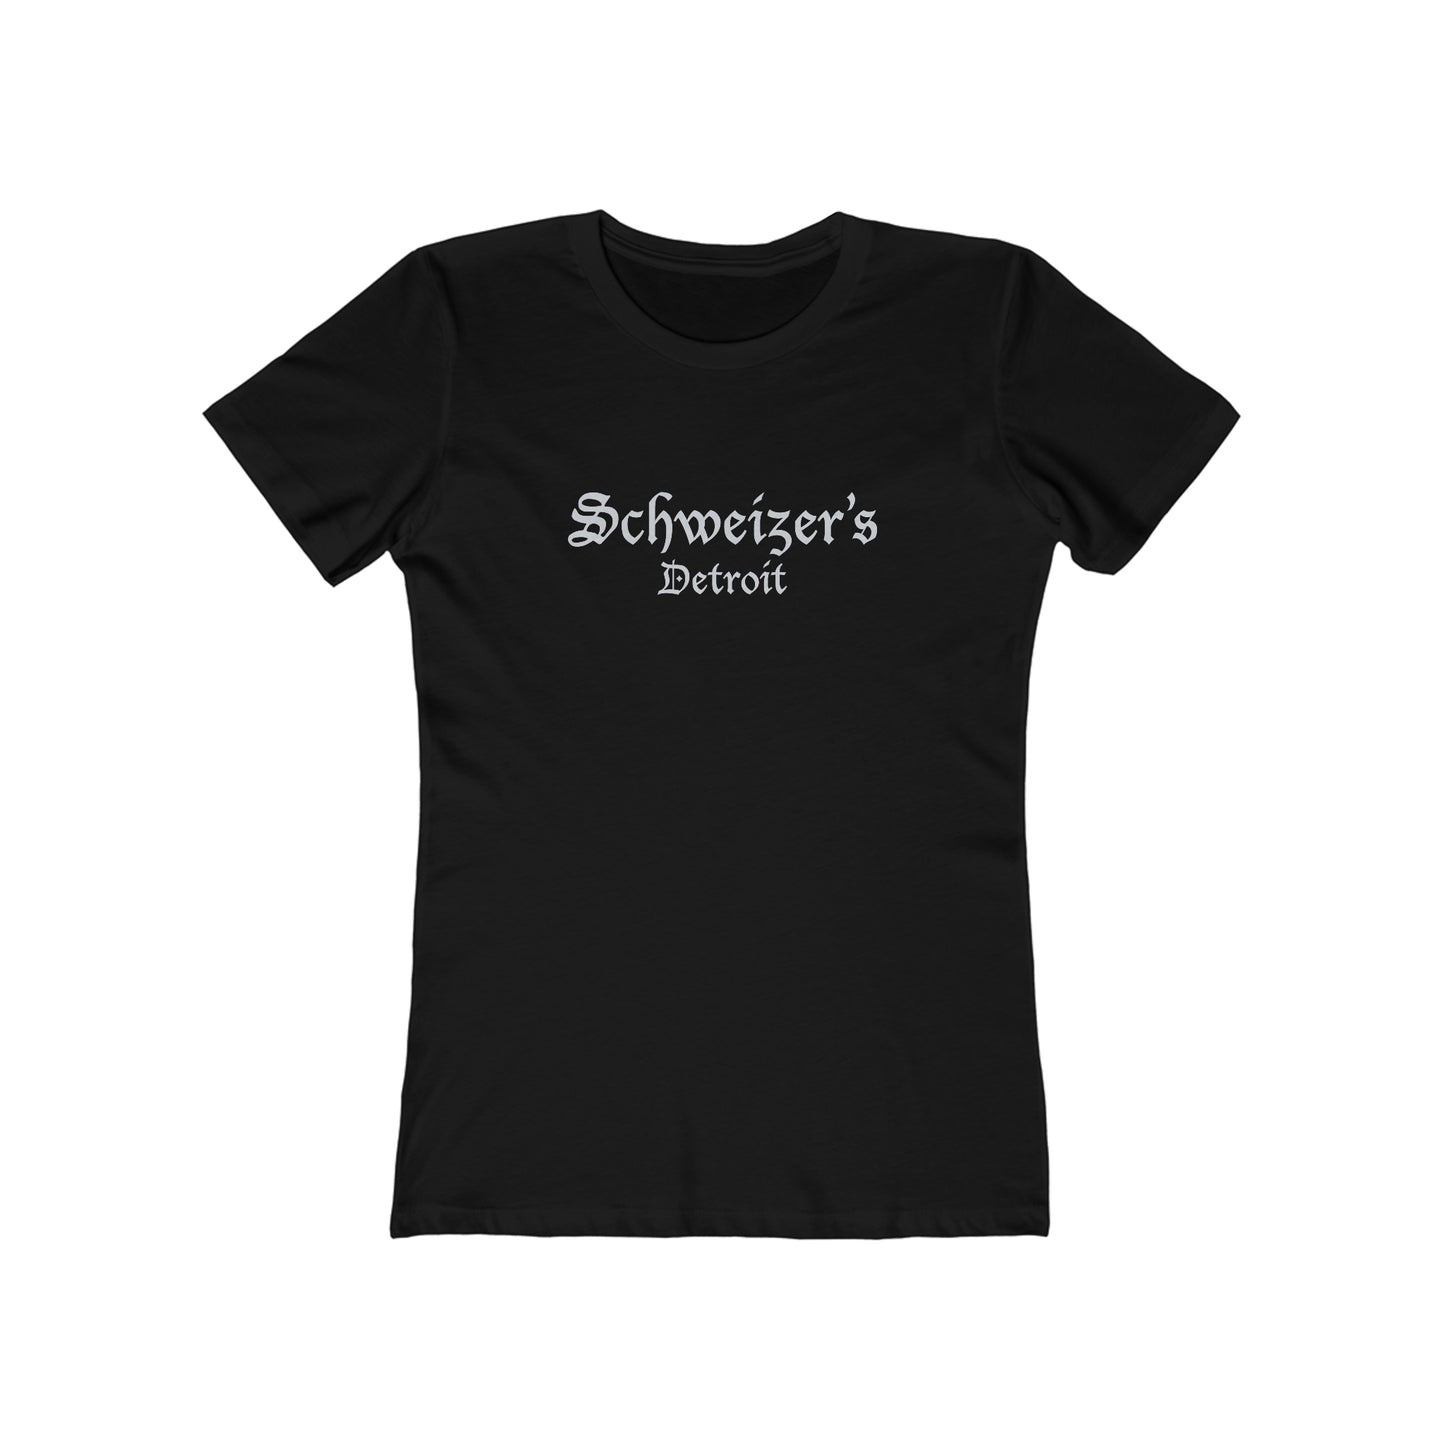 Schweizer's of Detroit - Women's T-Shirt